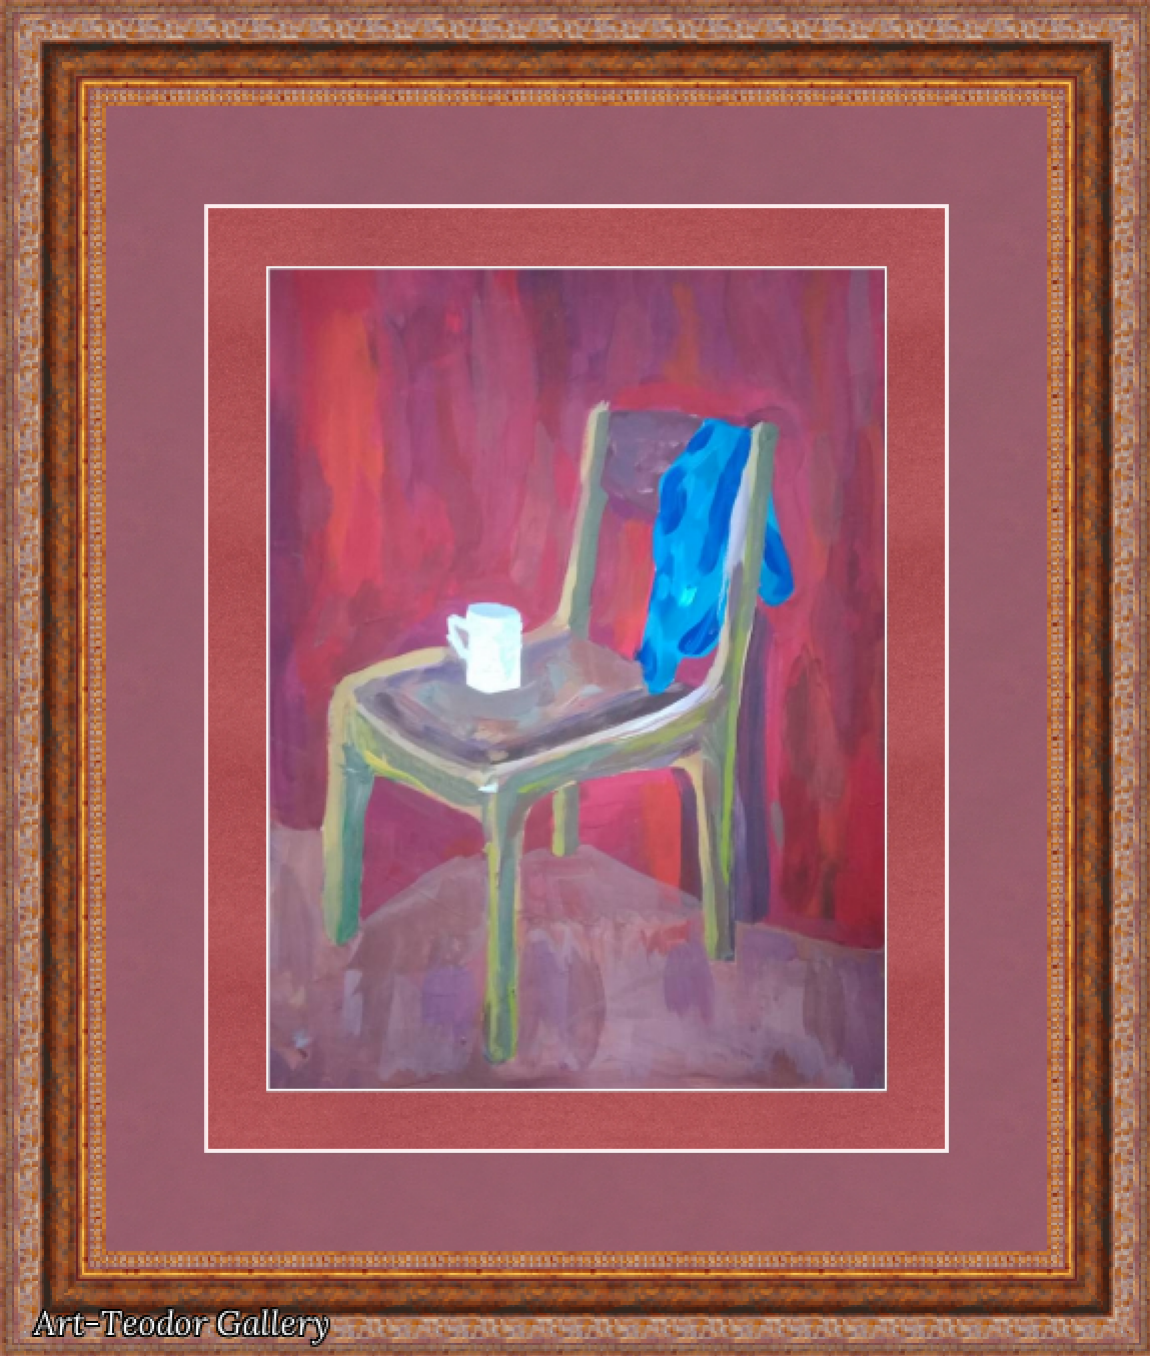 Art-Teodor Galería Pintura, gouache, 2020, 30×42 cm: Descripción de la obra